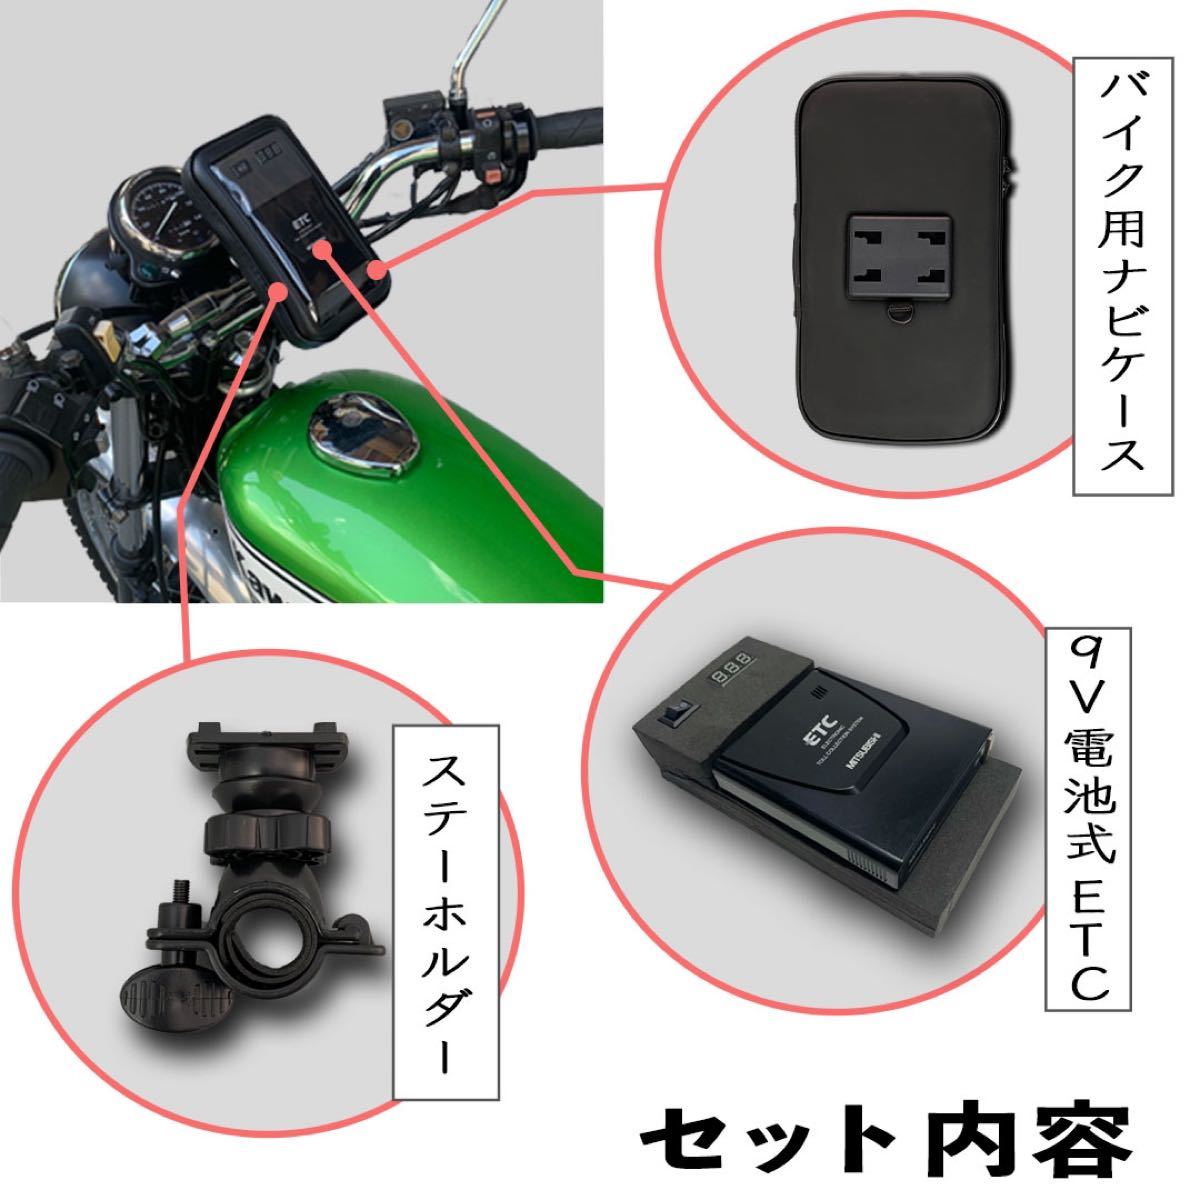 バイクにおすすめ【9V電池式バイクETC】三菱一体型 ポータブルETC 取付